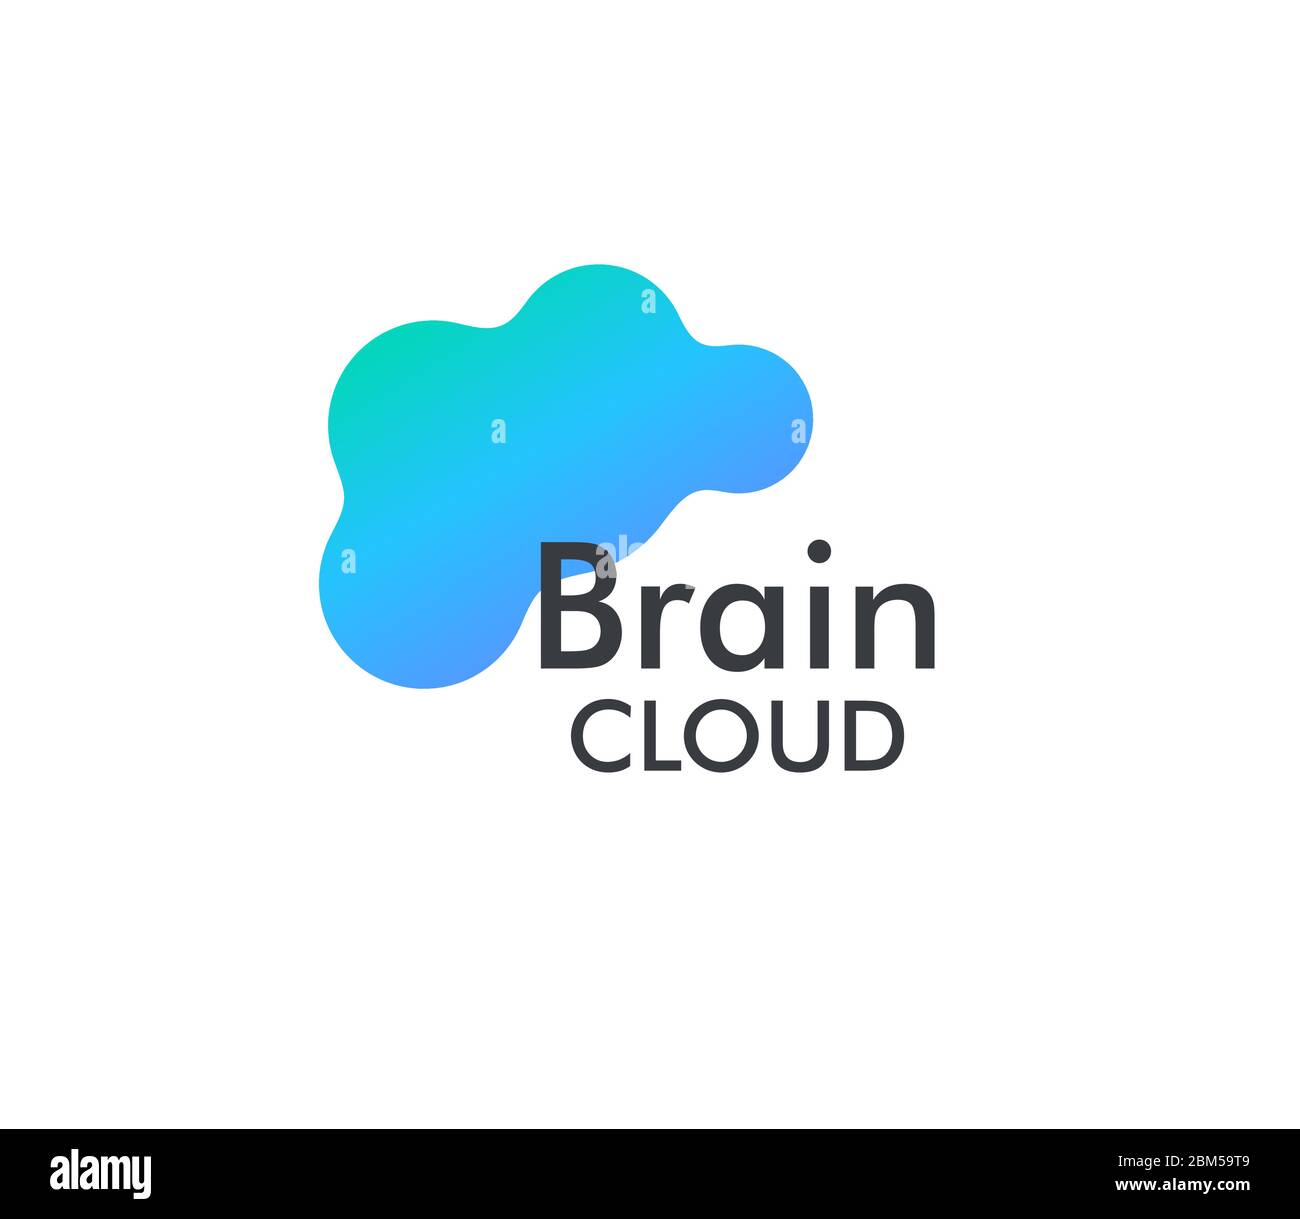 Online Brain Cloud Storage Vektorgrafik. Symbol für den Sicherungs-Service für Dateien und Fotos. Symbol für das Speichern und Teilen von Webdaten. Stock Vektor